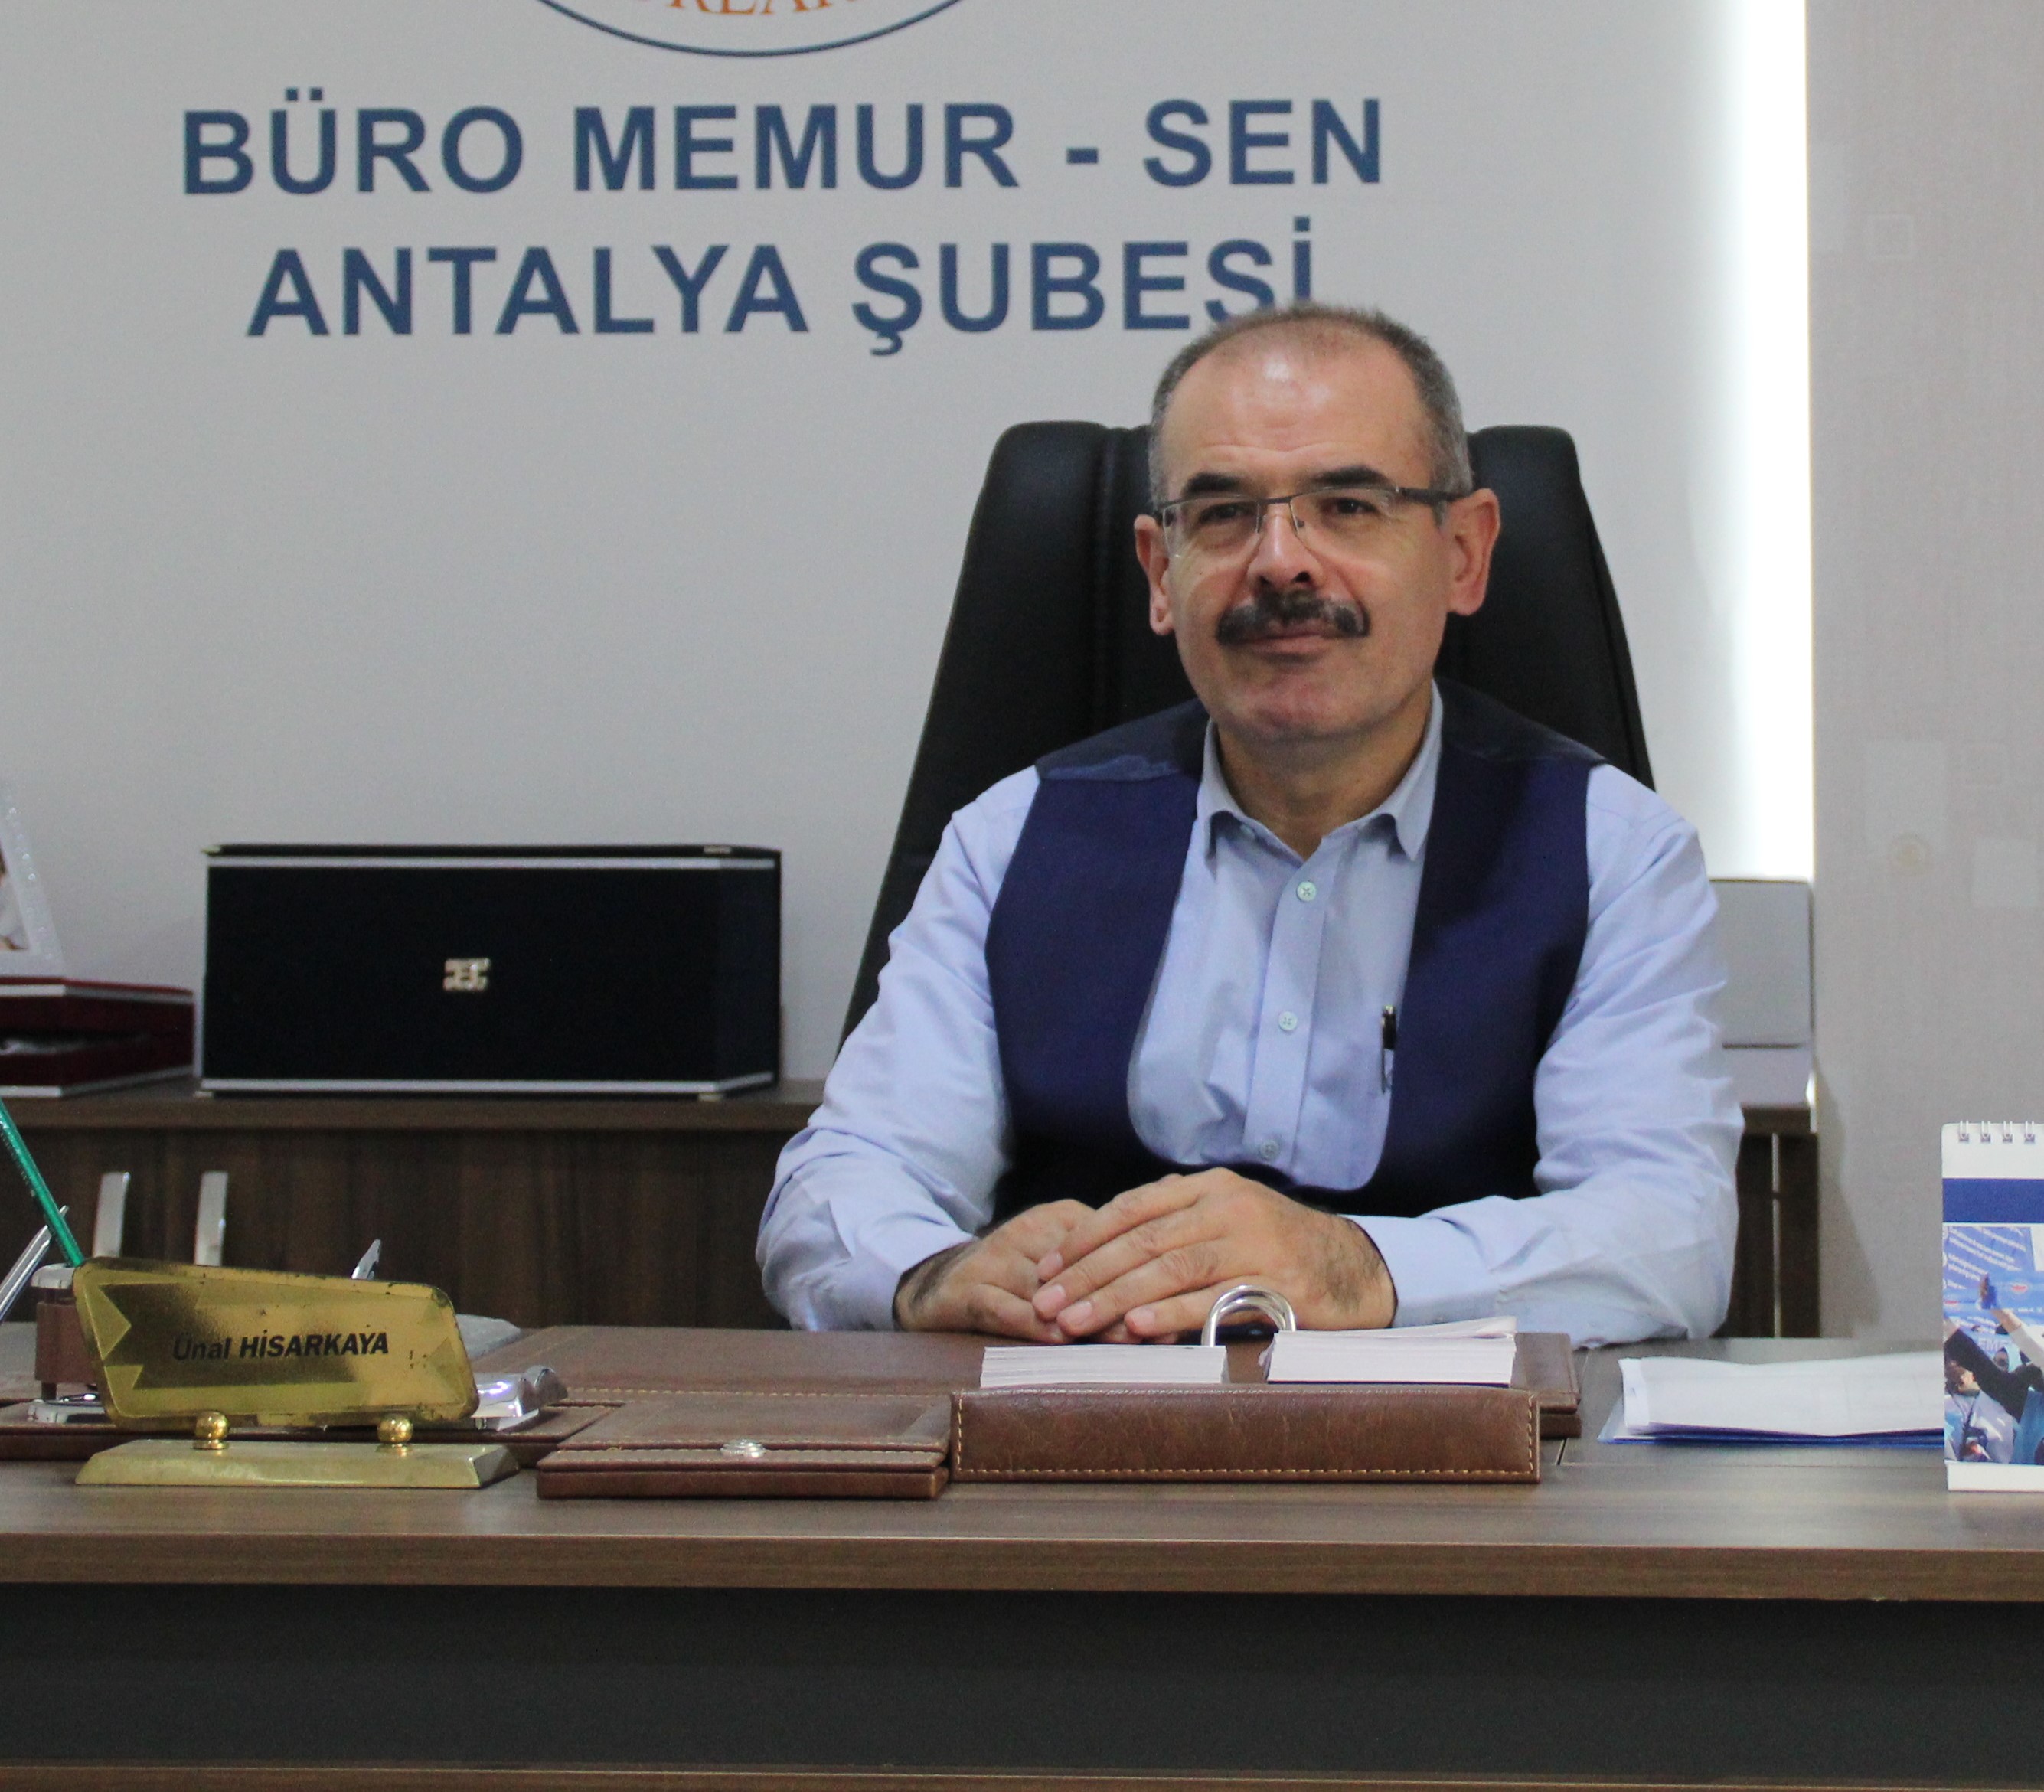 Memur-Sen Antalya İl Başkanı Ünal Hisarkaya , kamu görevlilerini ilgilendiren önemli gündem maddeleri üzerine açıklamalar yaptı.